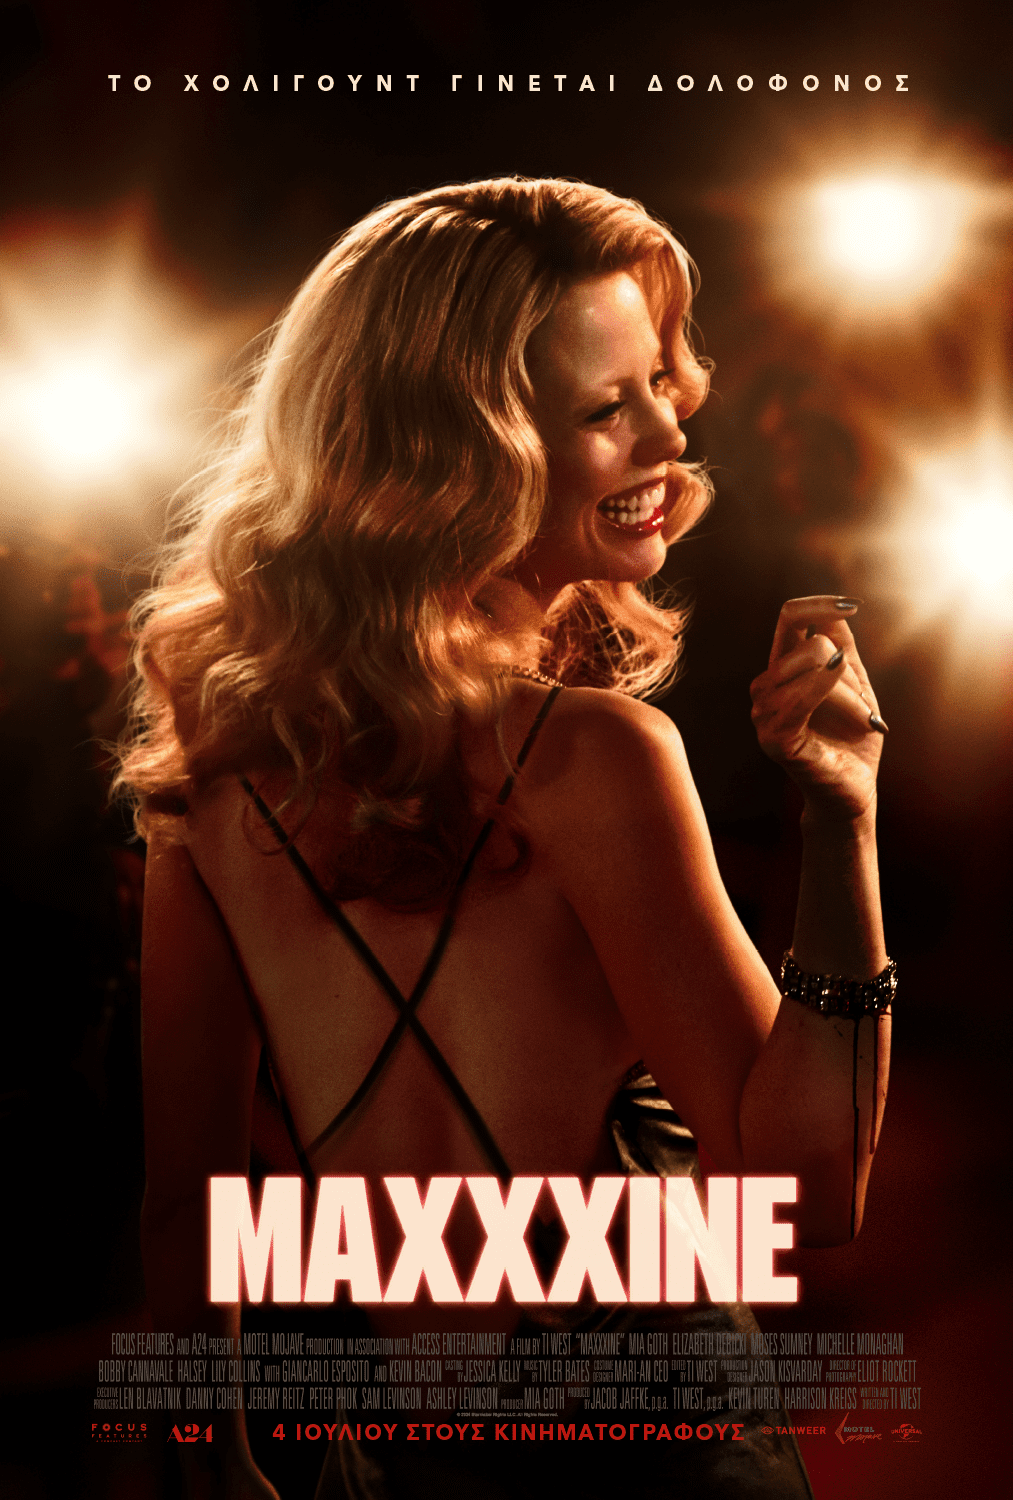 Η αφίσα της ταινίας "MaXXXine" του Ti West